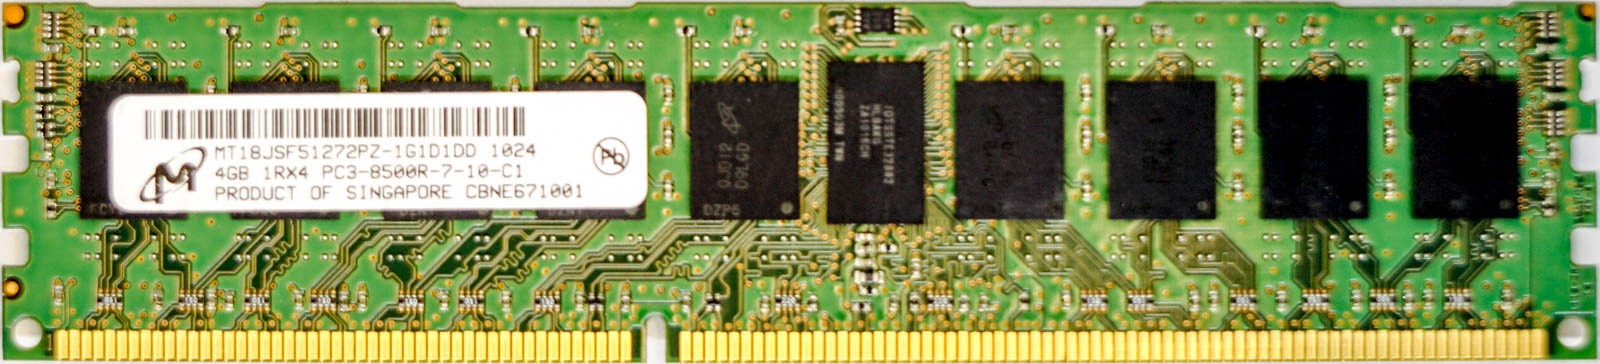 Micron - 4GB PC3-8500R (DDR3-1066Mhz, 1RX4)